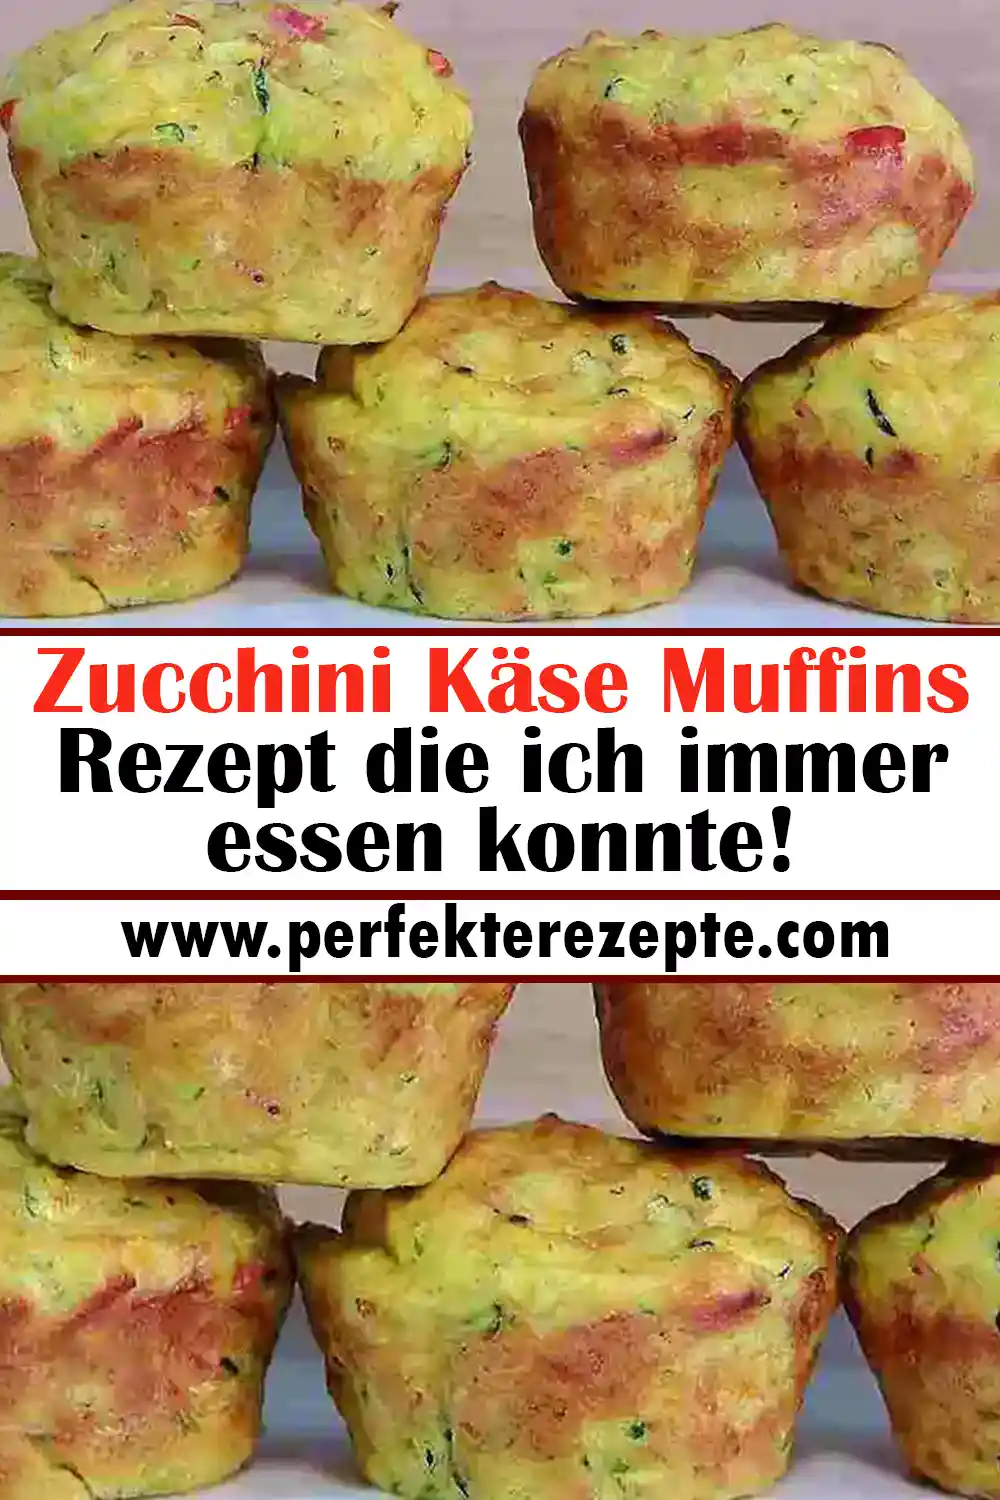 Zucchini Käse Muffins Rezept die ich immer essen konnte!